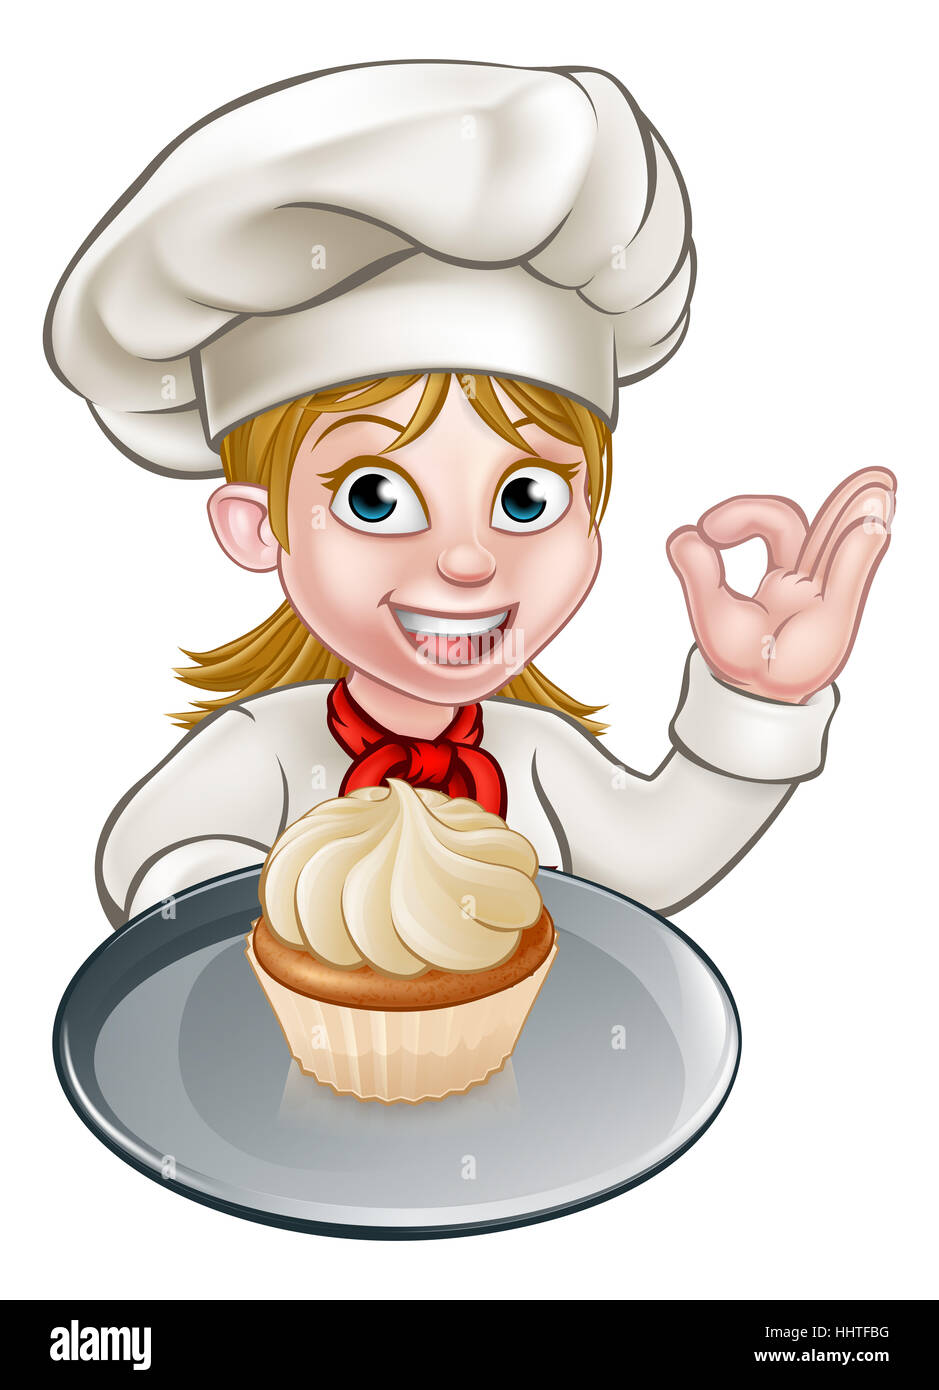 Eine Frau Koch oder Bäcker Cartoon-Figur eine Halteplatte mit einem Cupcake oder Fee Kuchen drauf Stockfoto